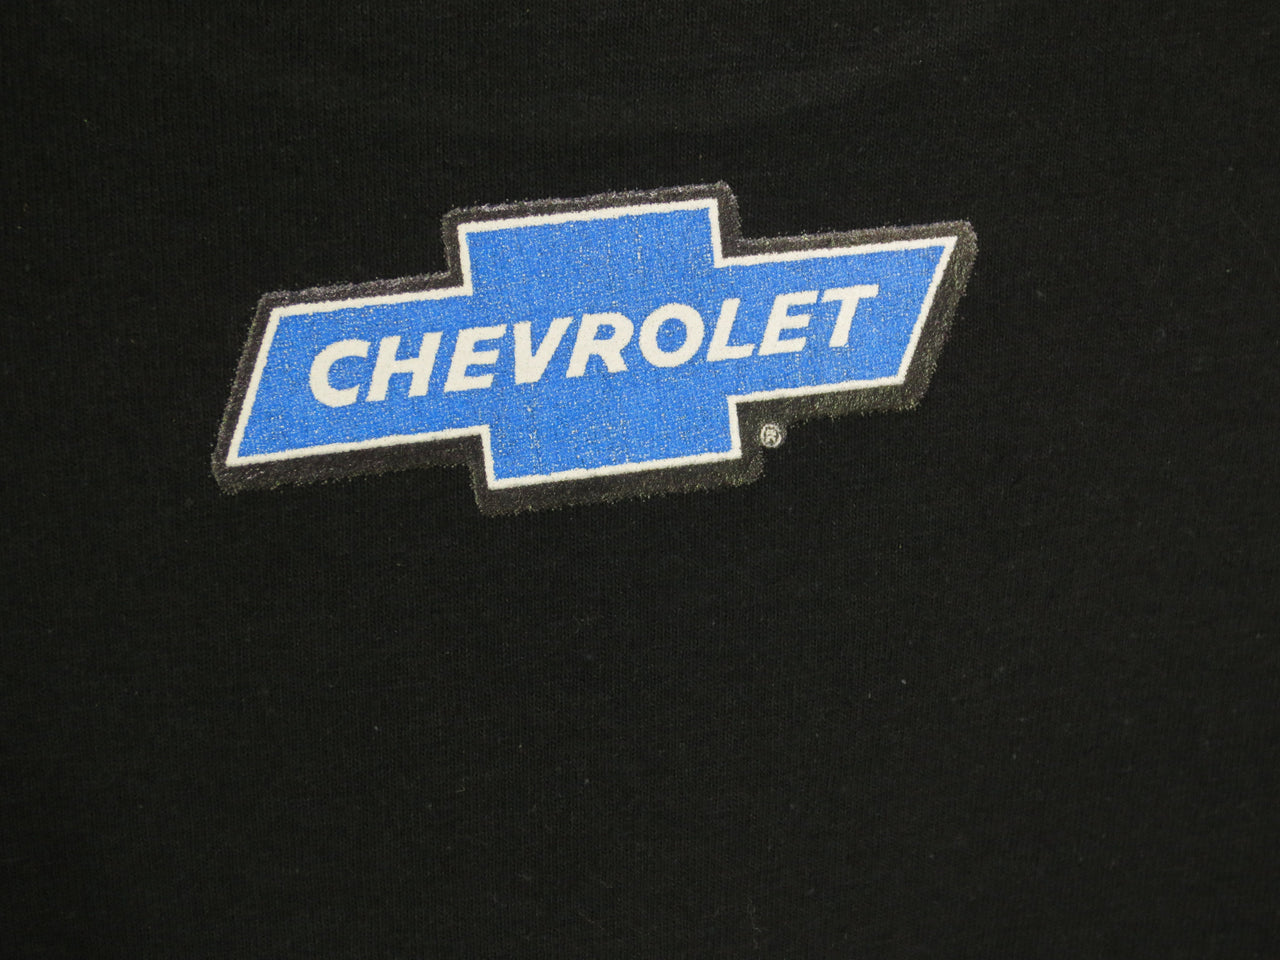 Chevy Camaro Black Tshirt - TshirtNow.net - 3